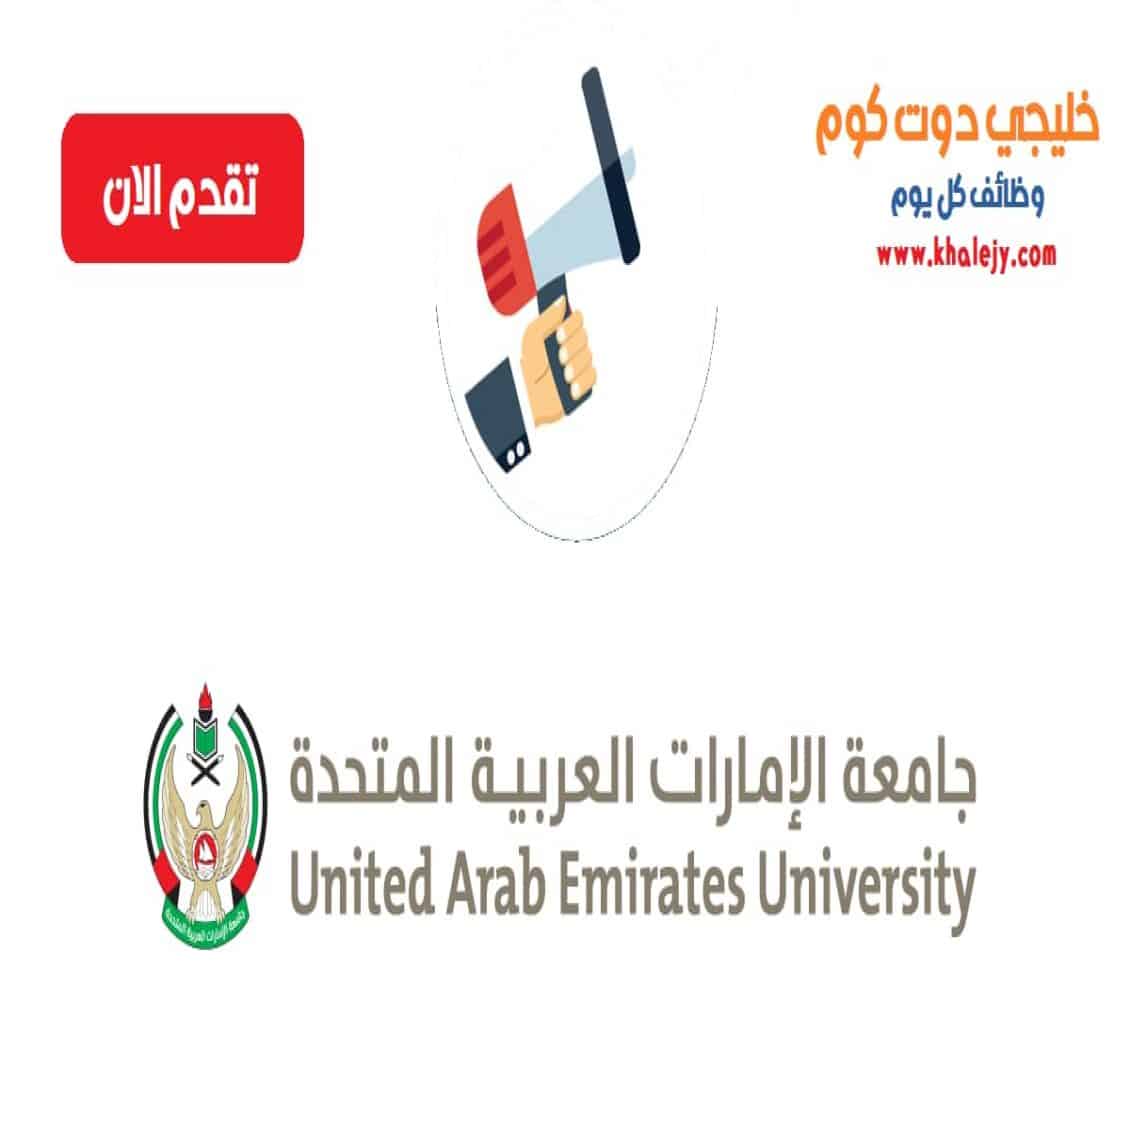 وظائف جامعة الامارات العربية المتحدة في الامارات